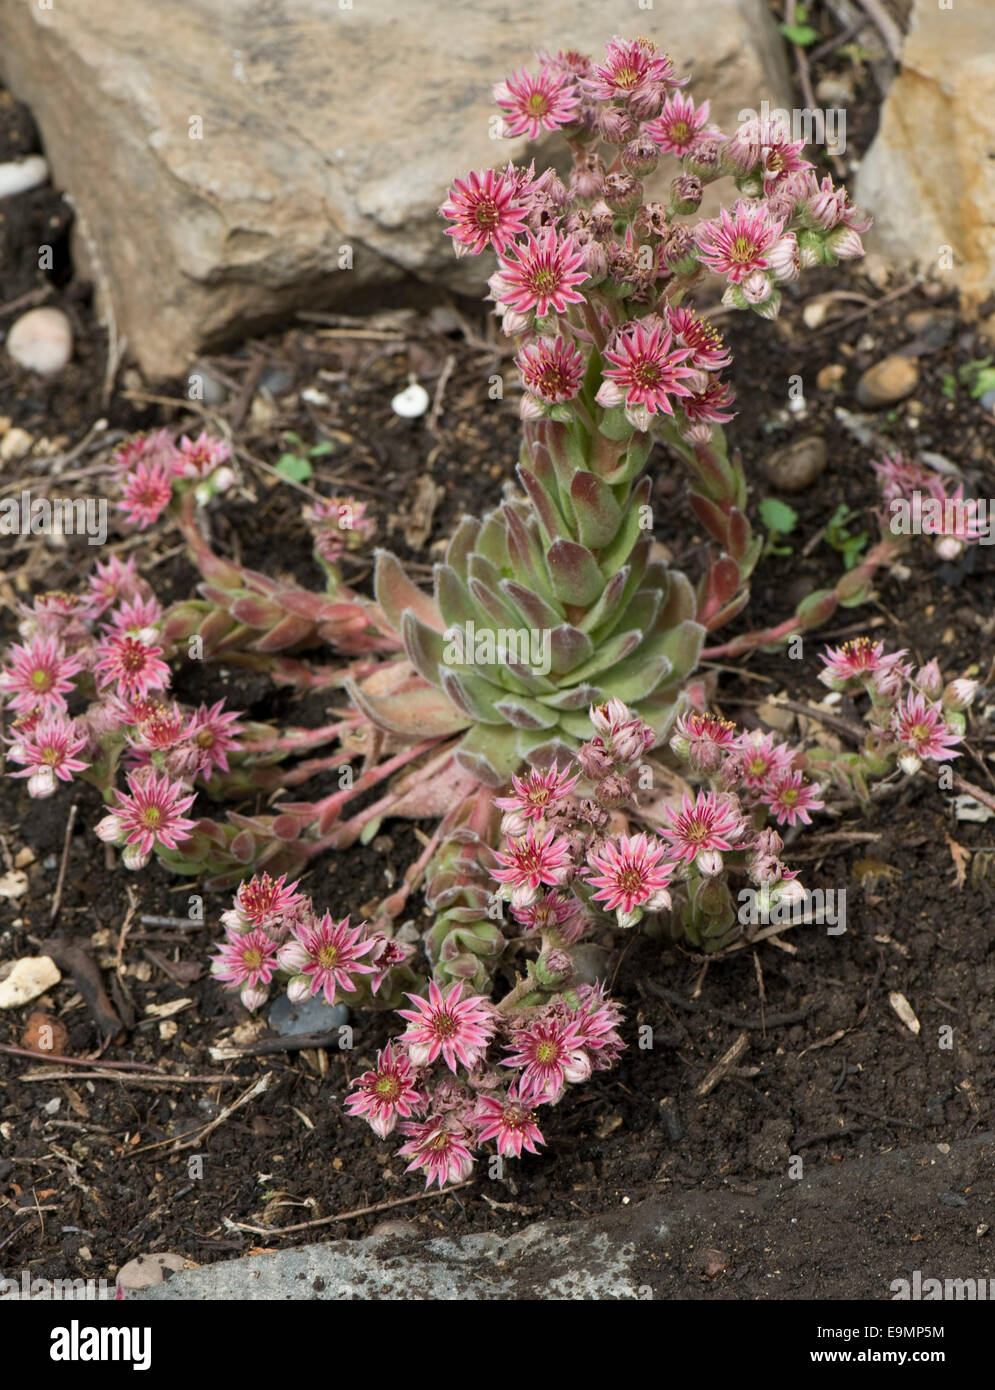 A houseleek, Sempervivum sp., in flower on a garden rockery Stock Photo